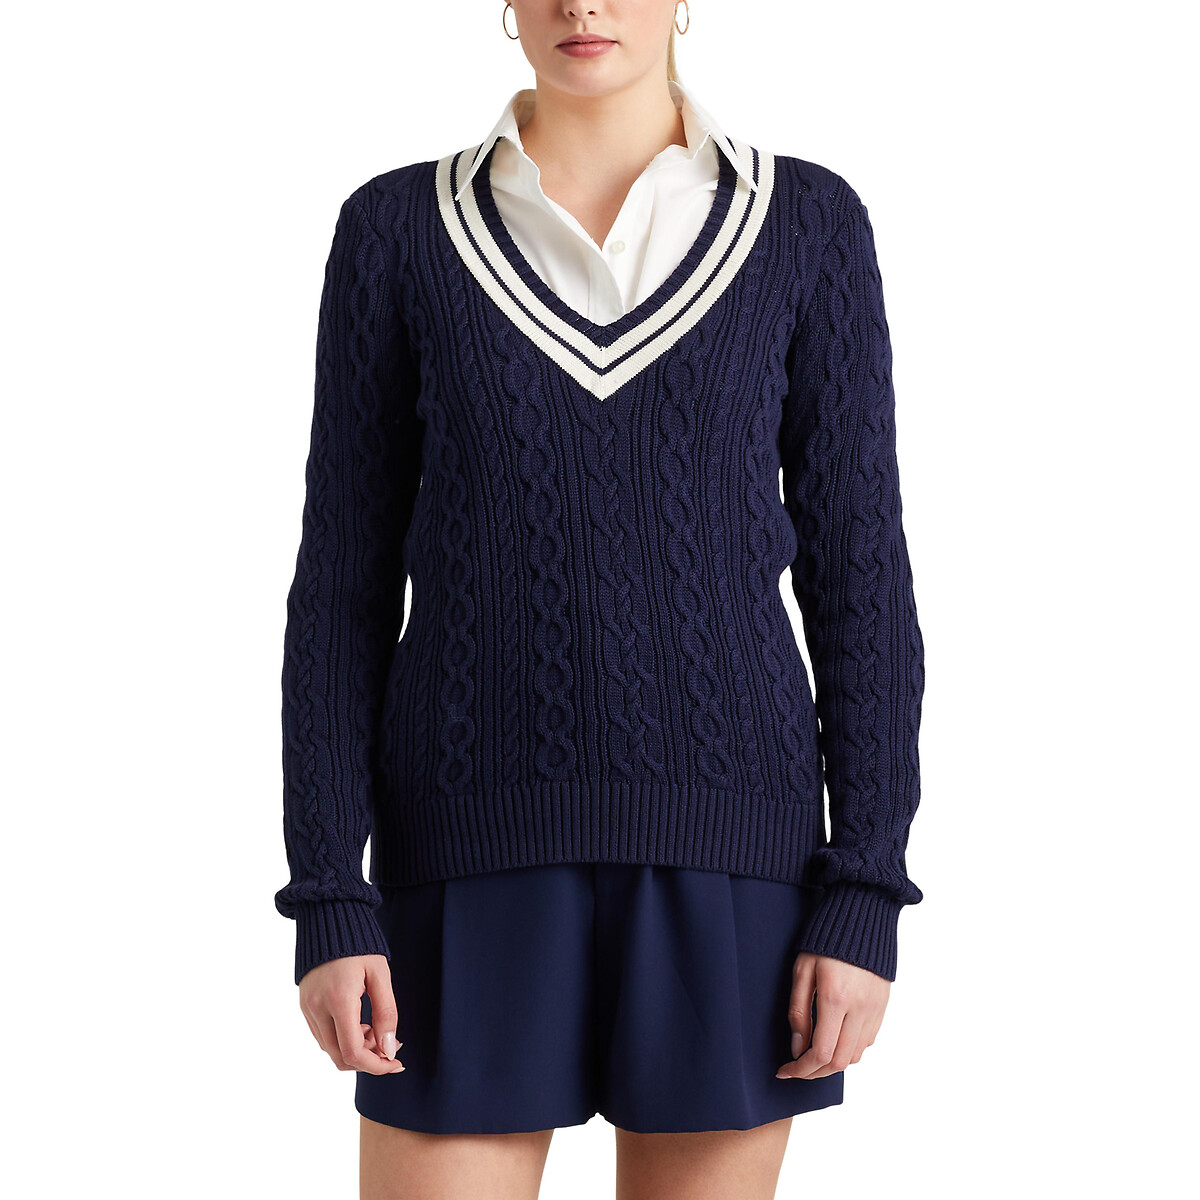 Пуловер с витым узором M синий пуловер без рукавов с v образным вырезом из витого трикотажа l белый